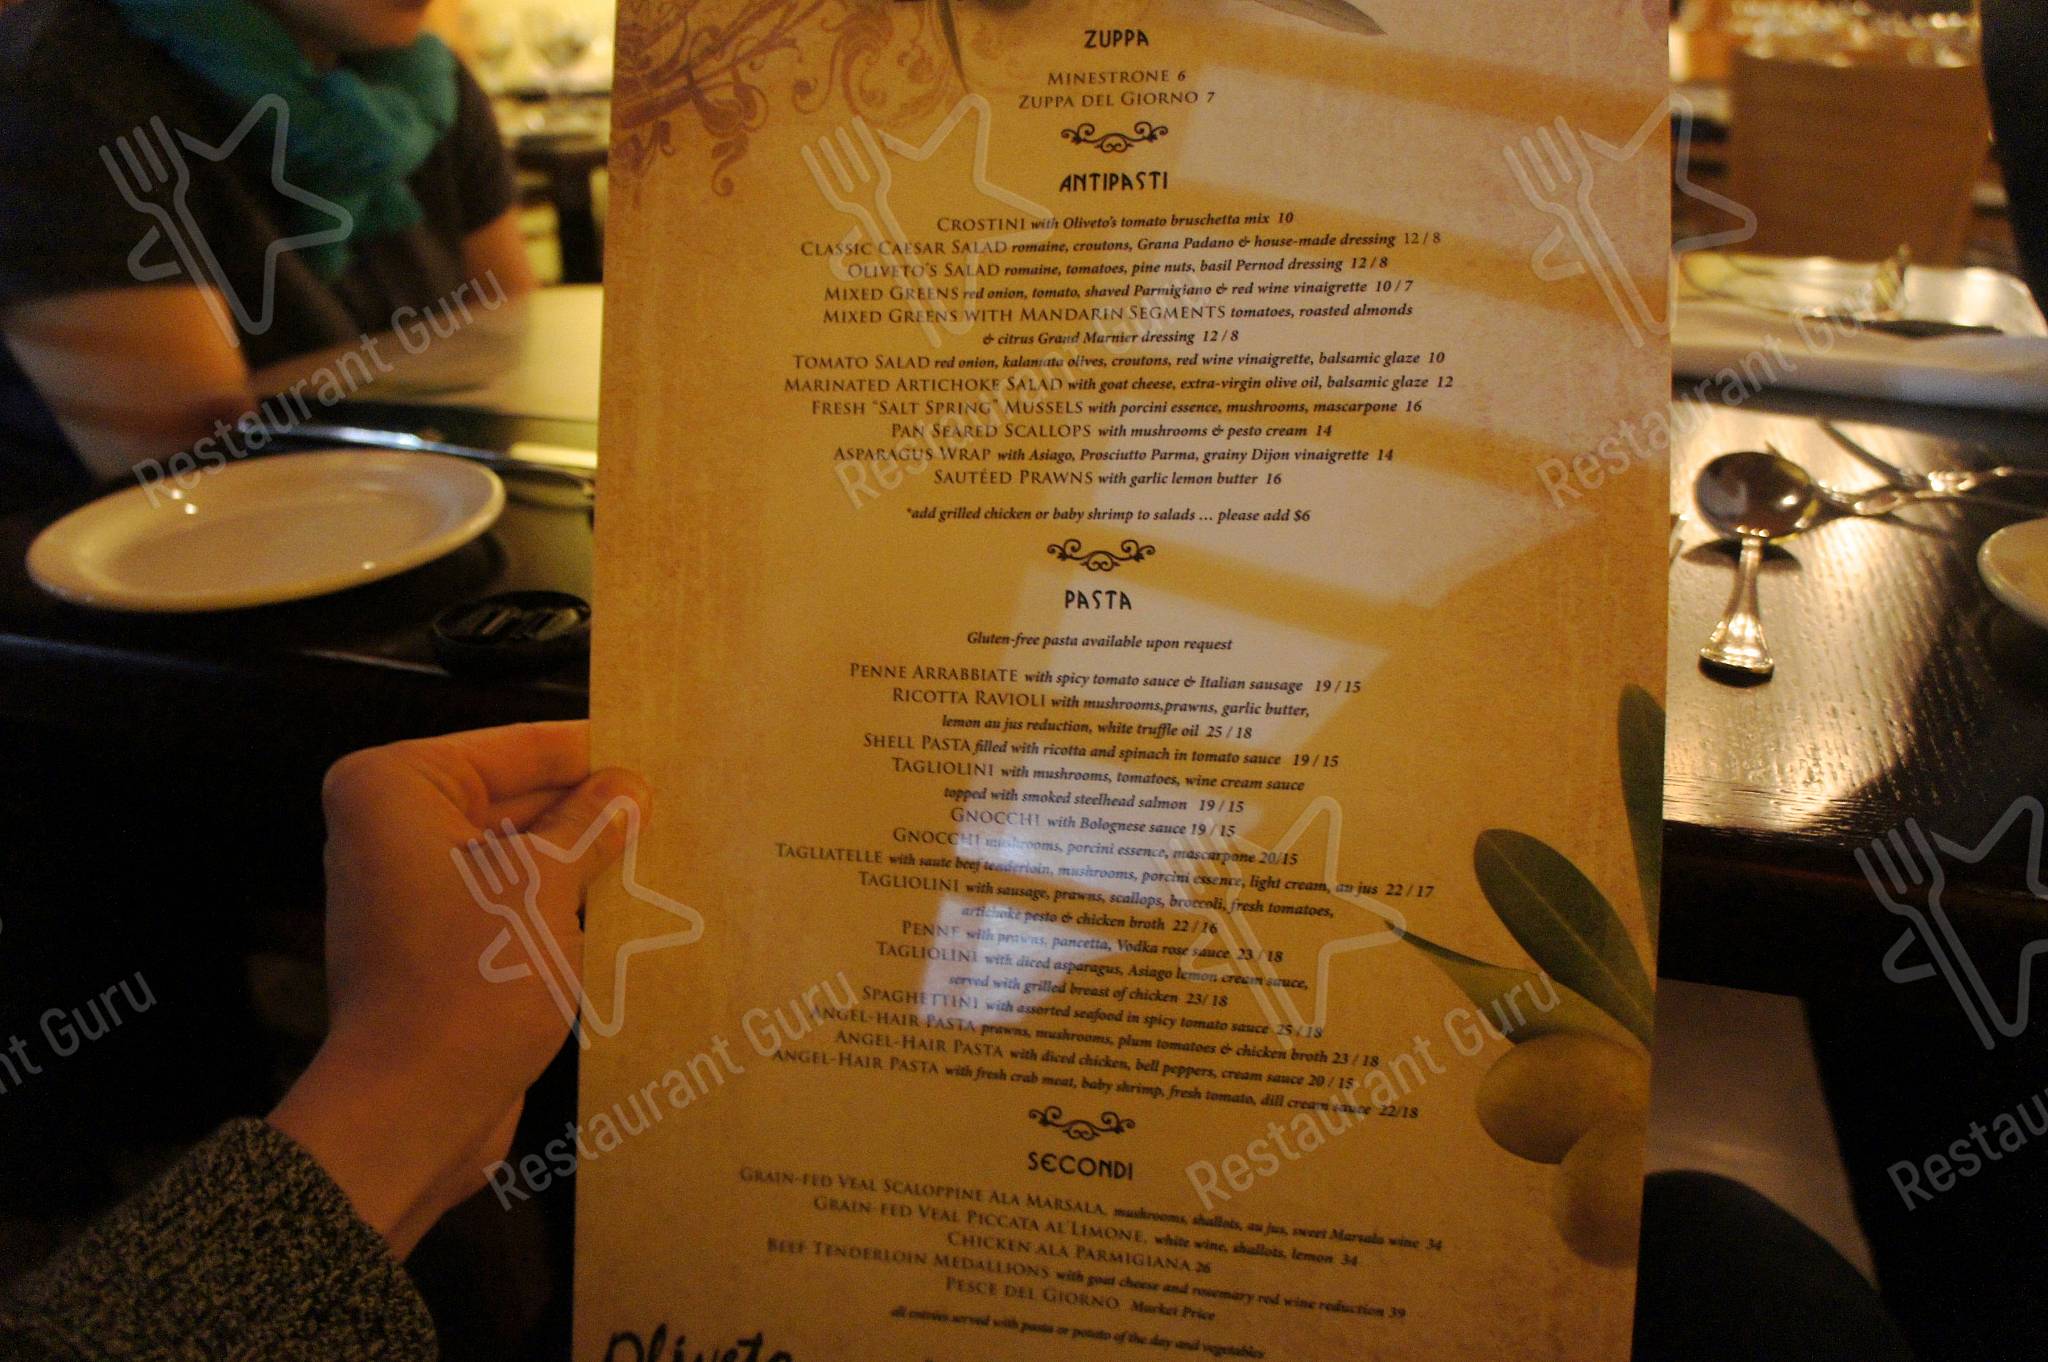 Oliveto Trattoria menu